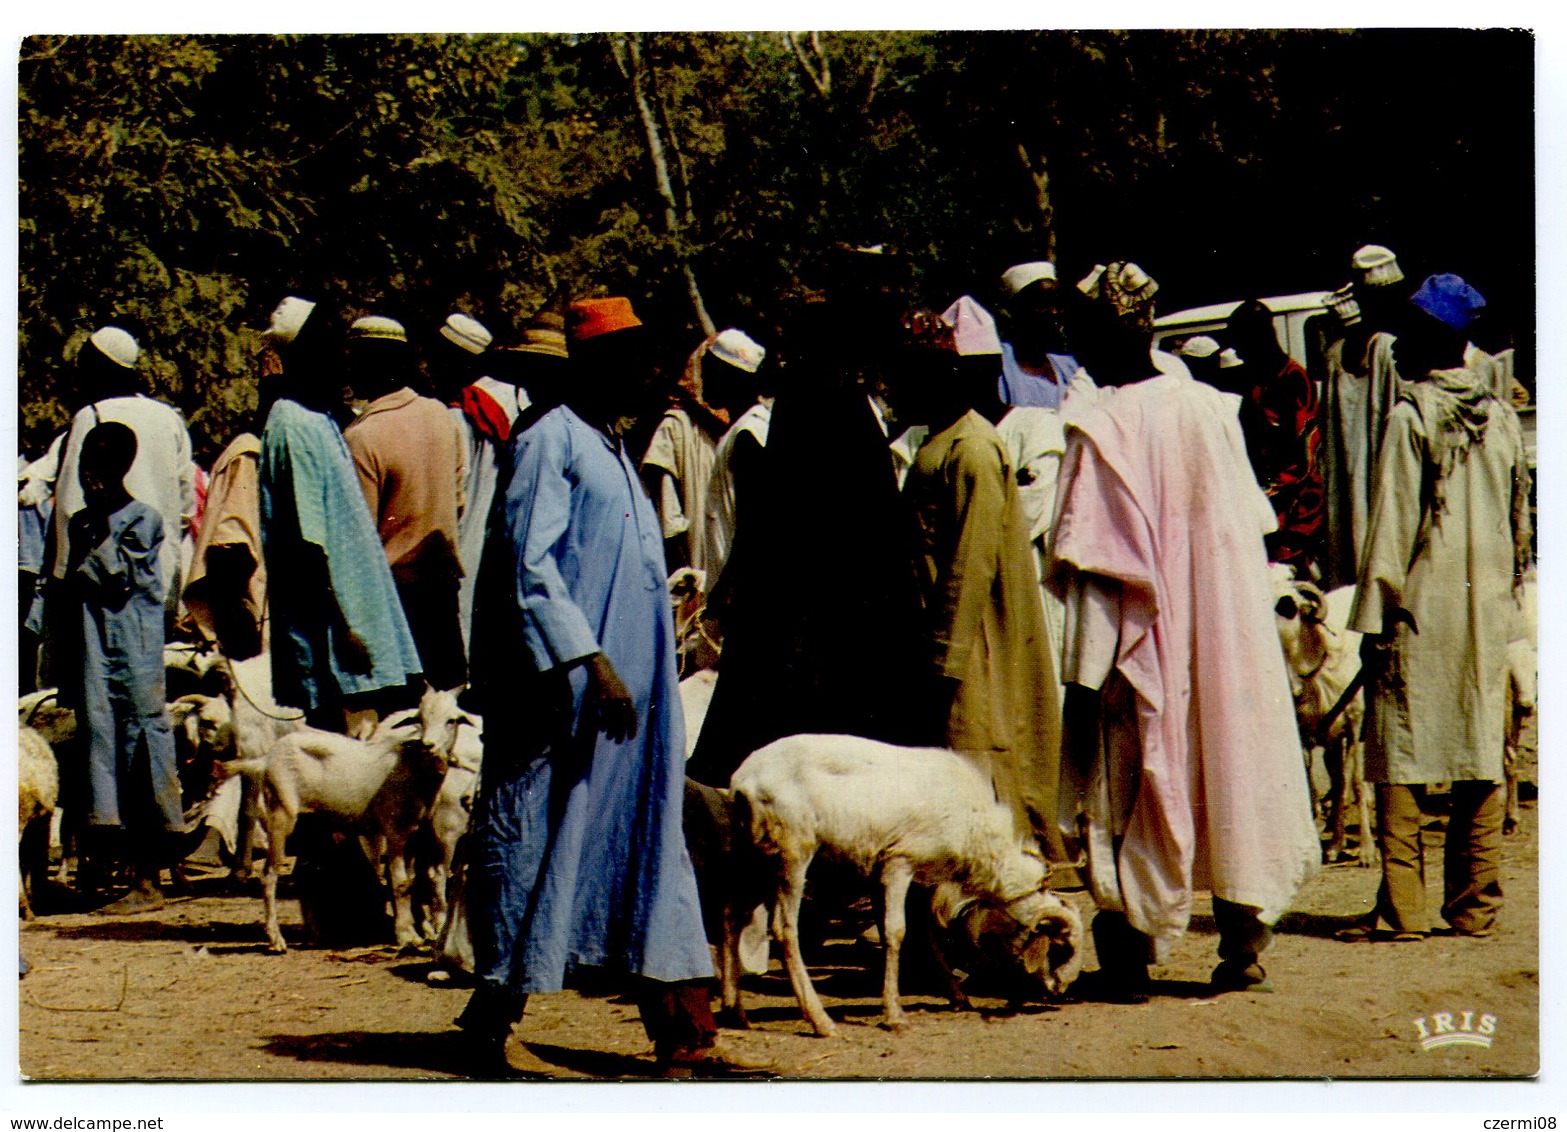 Gambia - Market Scene - Gambia